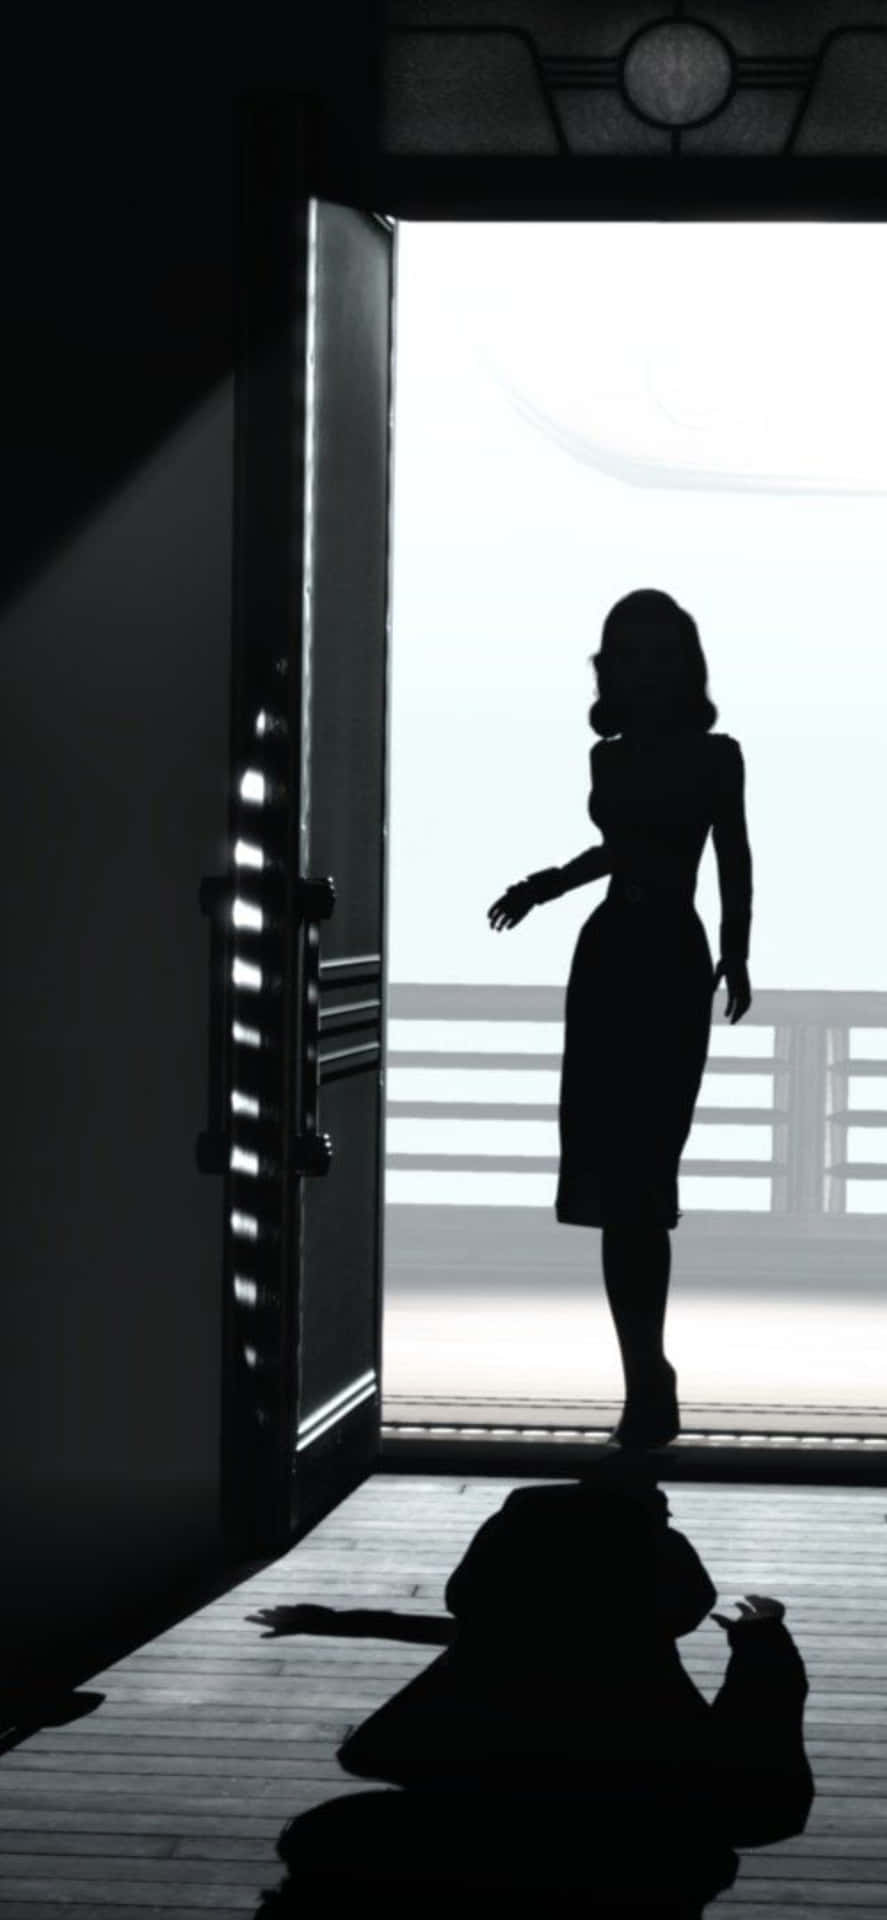 Baggrundssilhuet af Elizabeth åbner en dør på Iphone X Bioshock Infinite